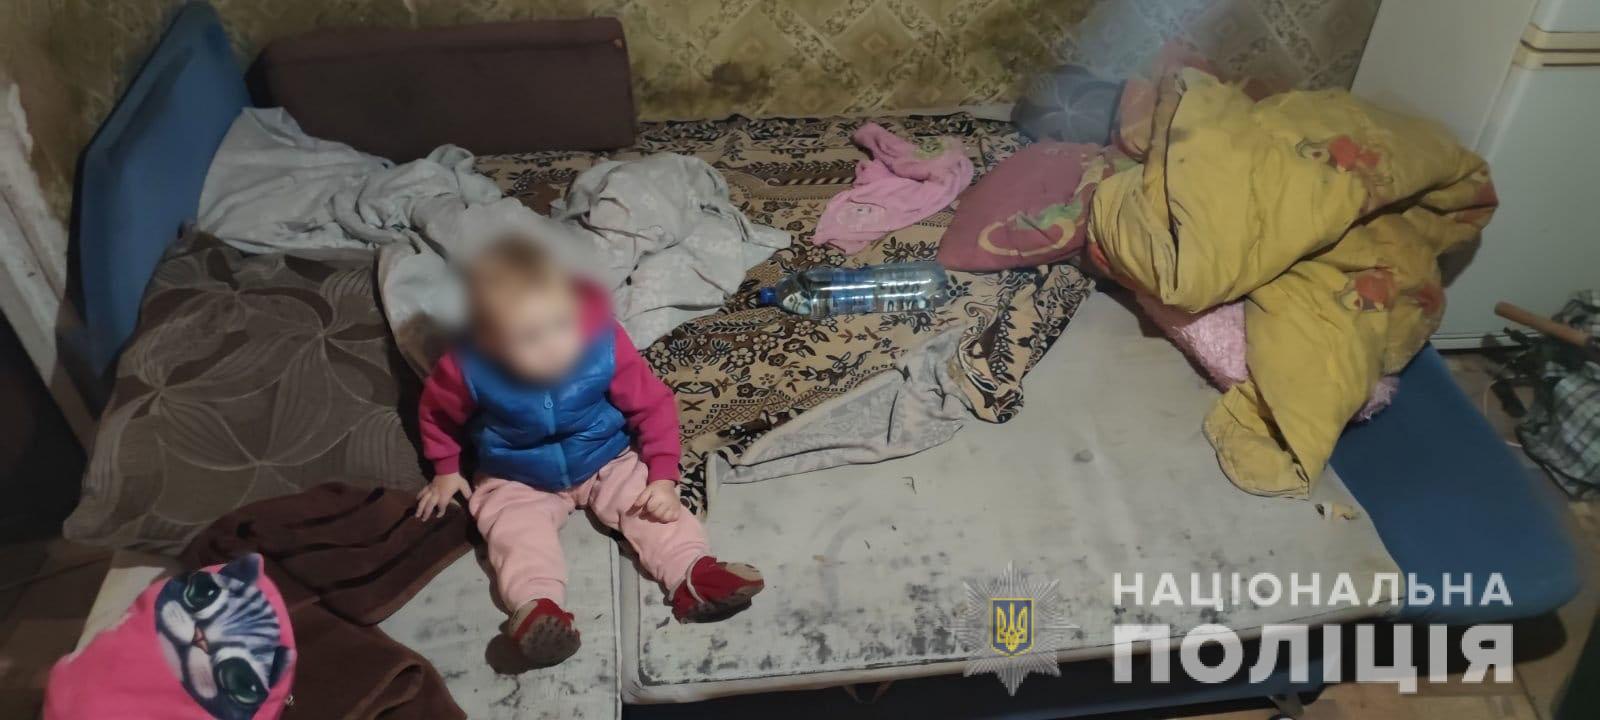 В Харькове пьяная мать, перебегая дорогу, уронила годовалого ребенка. Девочку забрали (фото, видео)